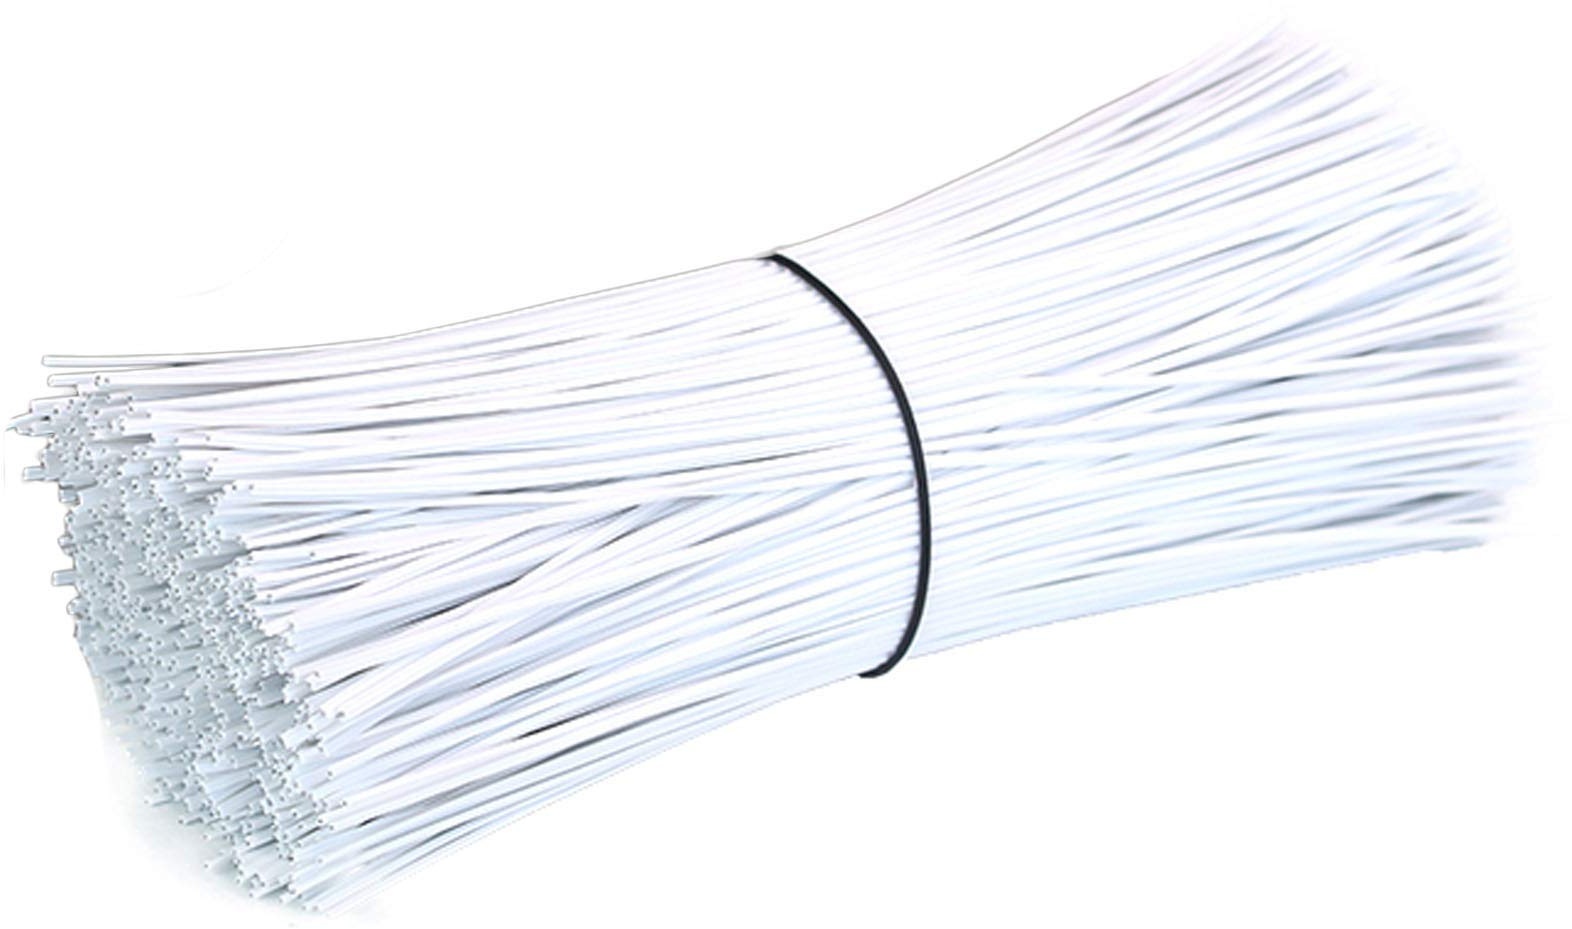 MHUI Plastic Twist Ties Kabelbinder Bag Ties 500 STK. Geeignet Zum Befestigen Von Beuteln, Kabeln, Organisieren Von Drähten, Gartenlänge 30 cm,White 30cm,Round Mouth